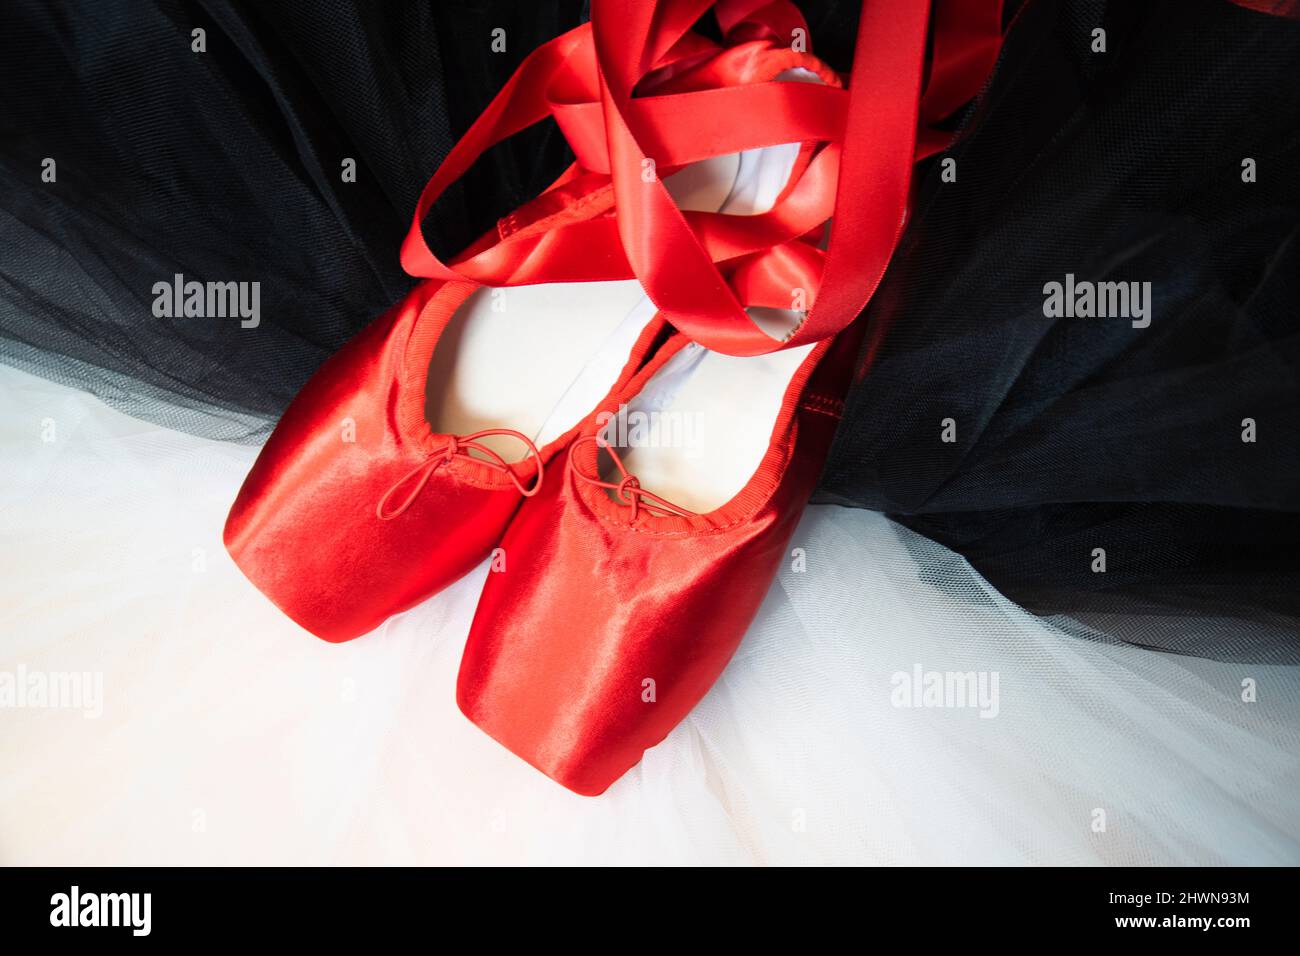 Rote Ballet spitzenschuhe, die auf einem weißen und schwarzen Tutu ruhen. Stockfoto